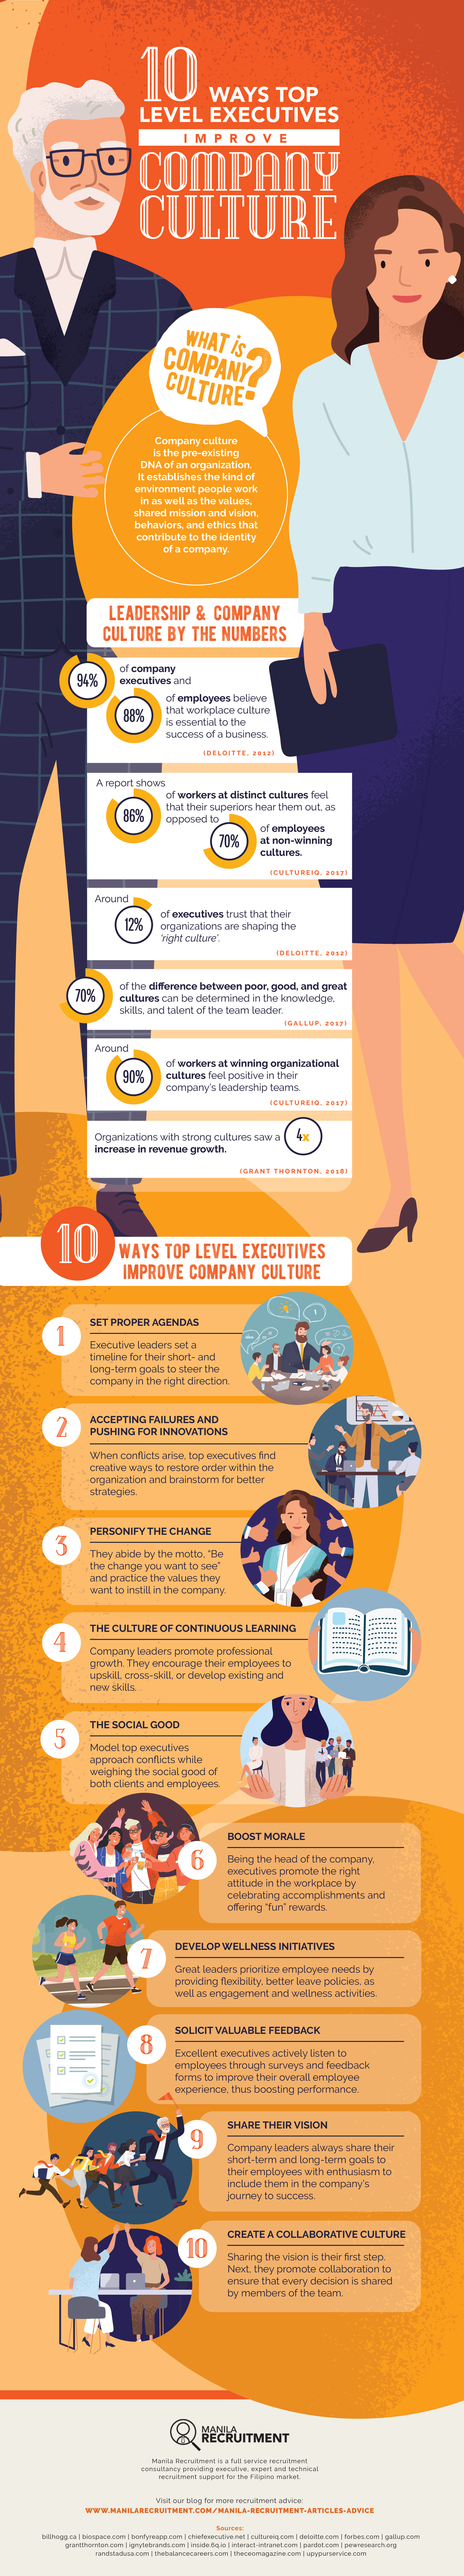 10 Ways Top Level Executives Improve Company Culture